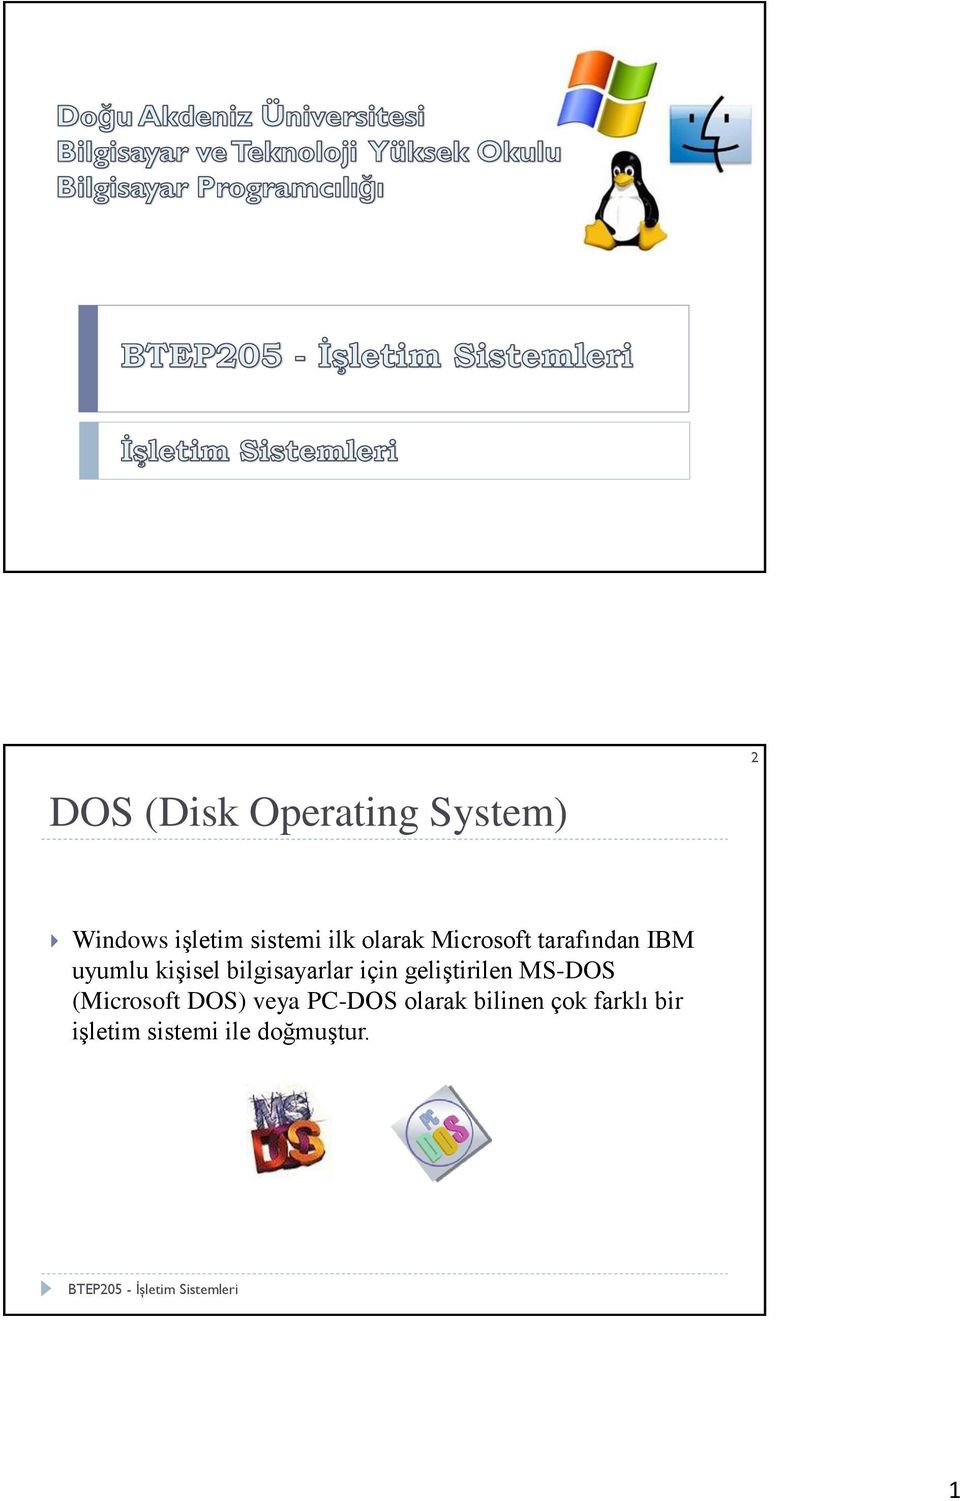 bilgisayarlar için geliştirilen MS-DOS (Microsoft DOS)